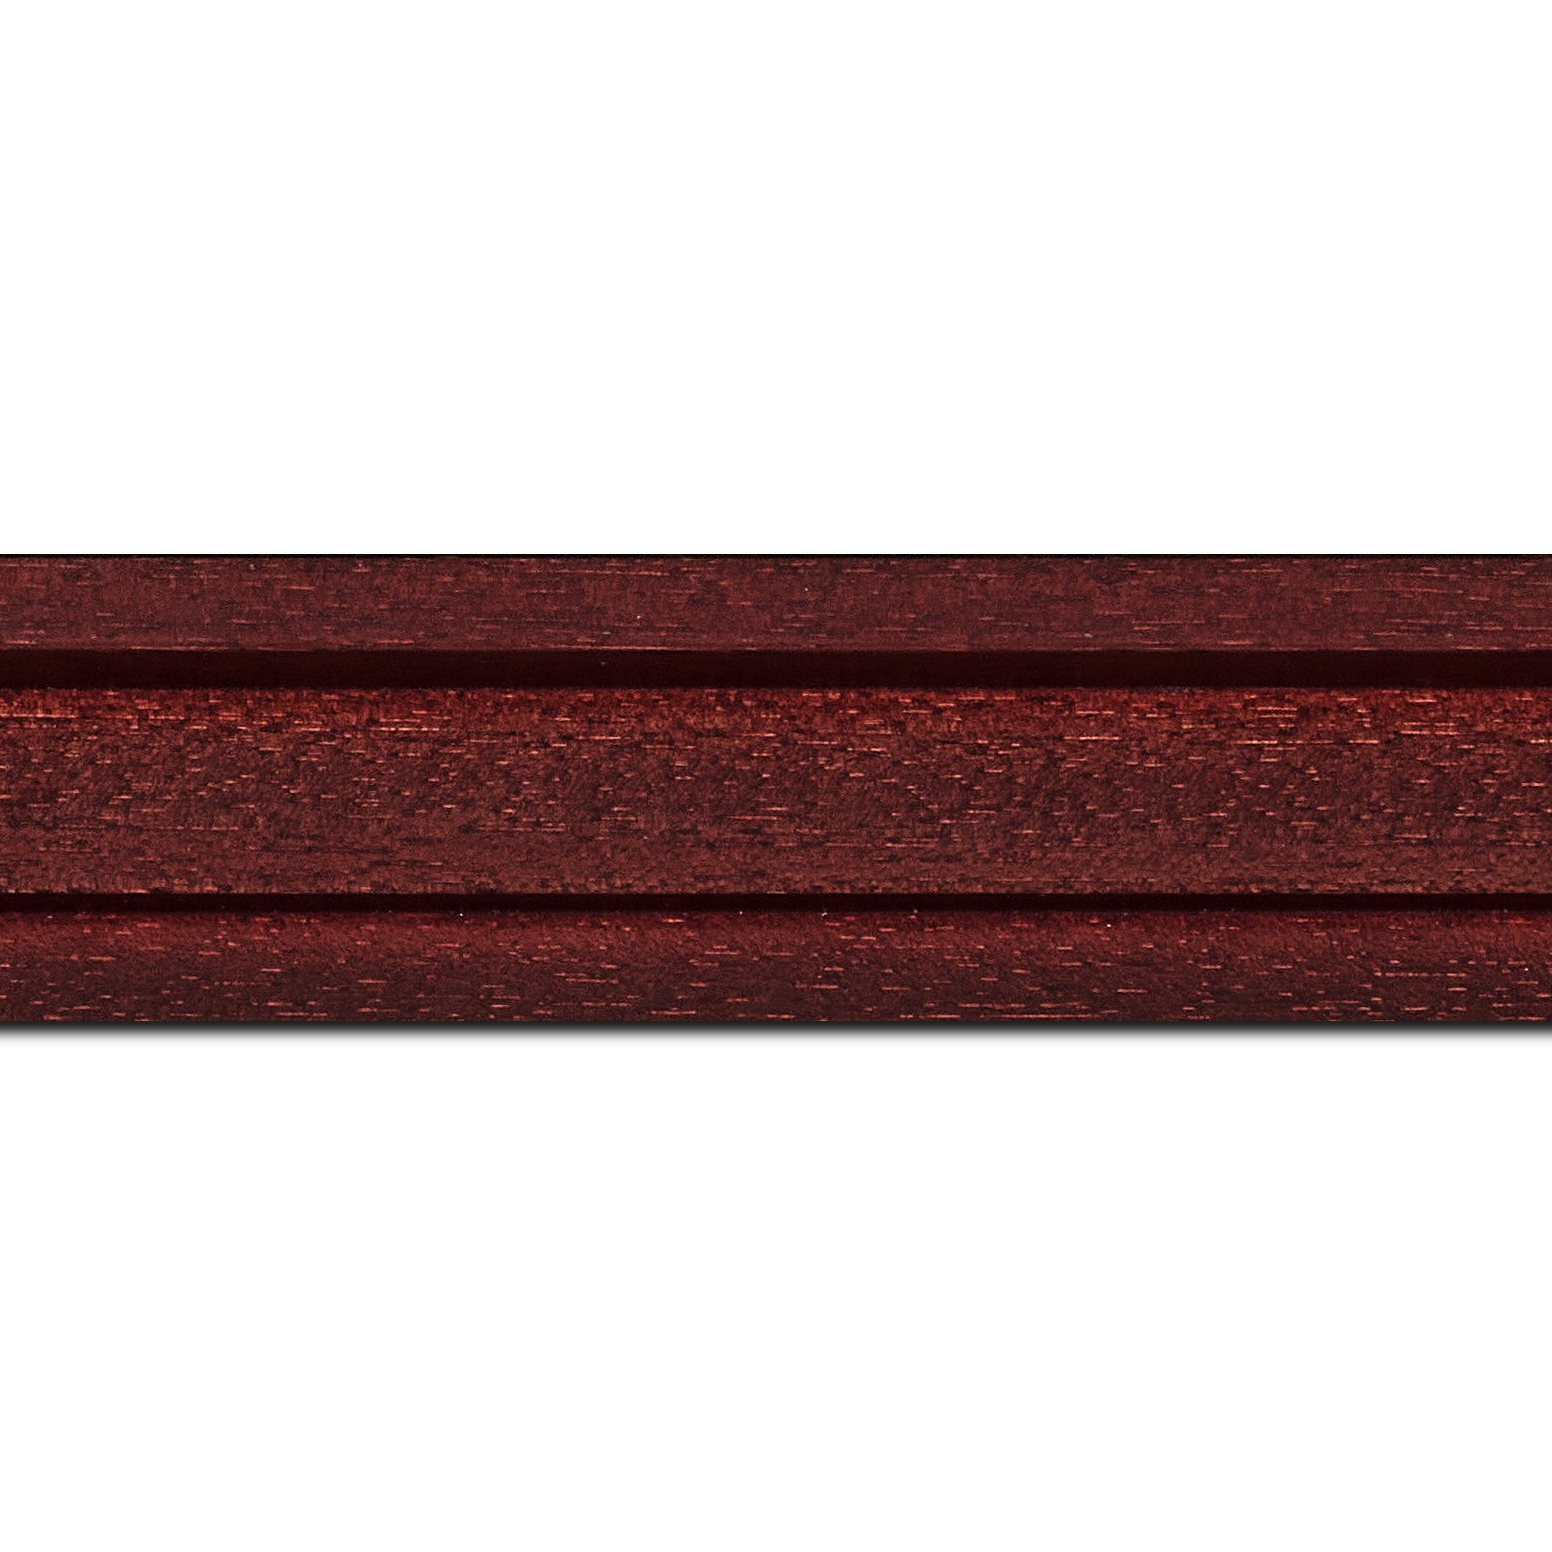 Pack par 12m, bois caisse américaine profil escalier largeur 4.4cm bordeaux satiné (spécialement conçu pour les châssis d'une épaisseur jusqu’à 2.5cm )(longueur baguette pouvant varier entre 2.40m et 3m selon arrivage des bois)